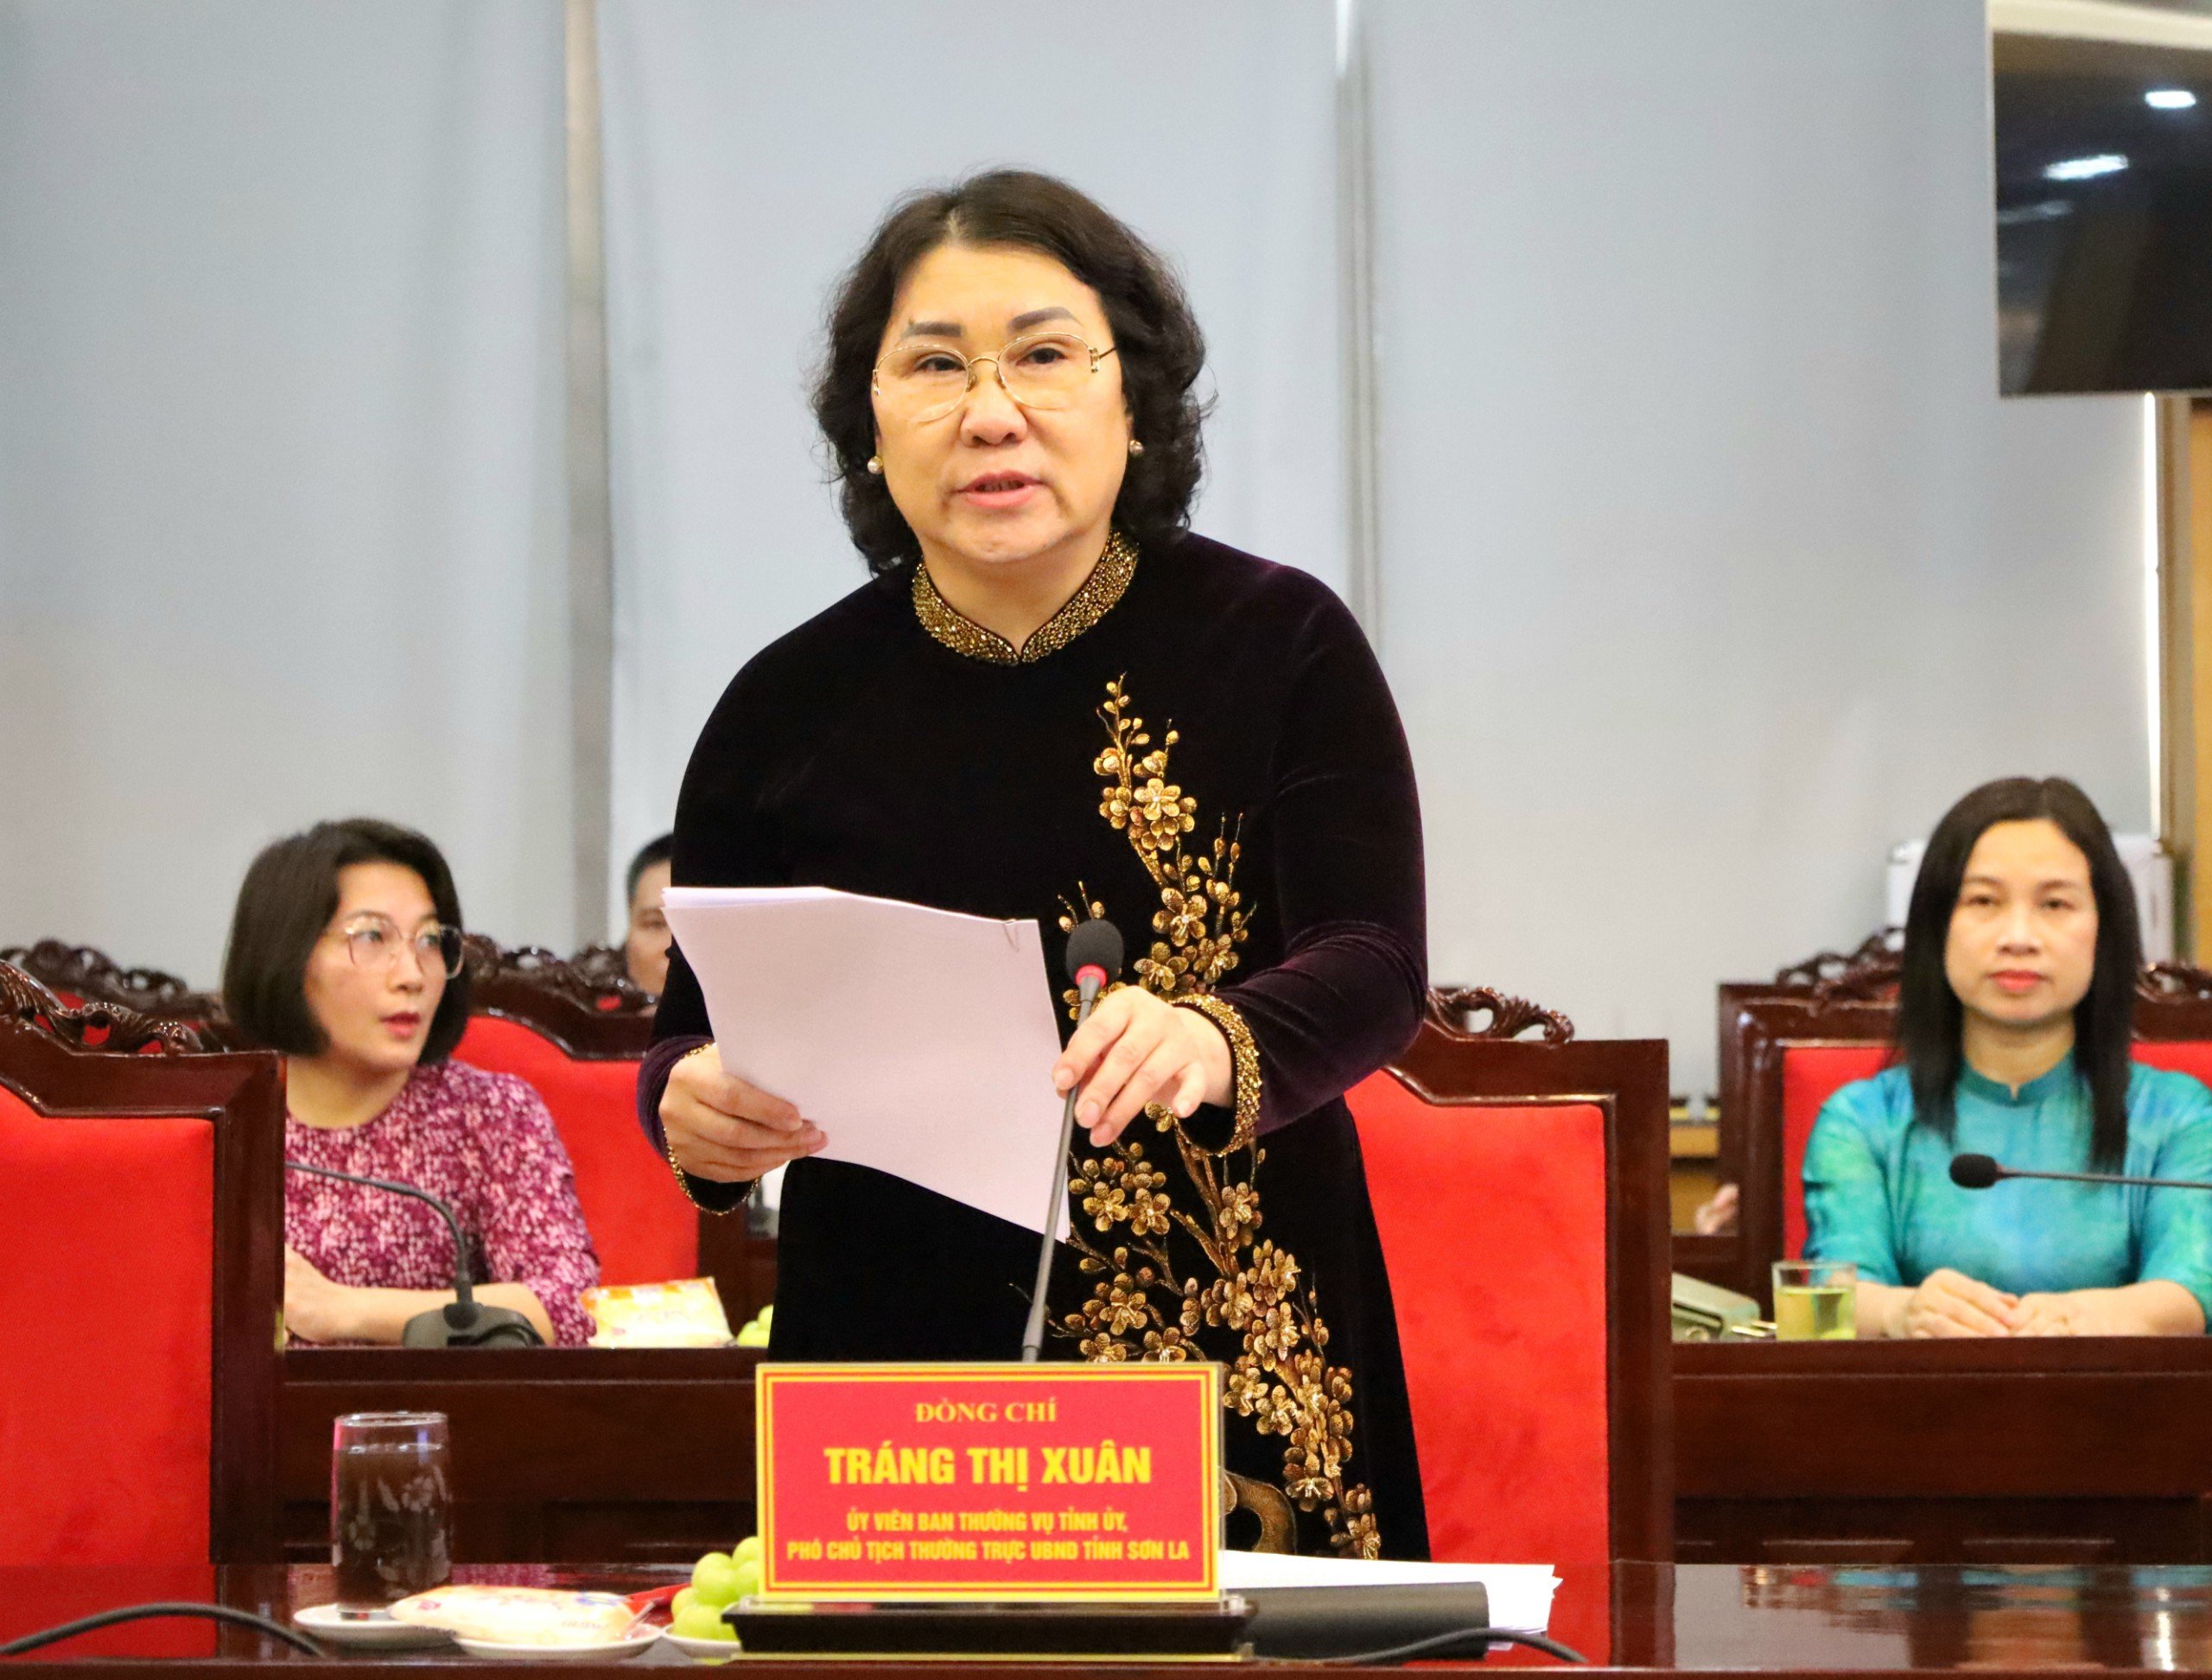 Bà Tráng Thị Xuân - Ủy viên BTV Tỉnh ủy, Phó Chủ tịch thường trực UBND tỉnh, Trưởng Ban vì sự tiến bộ của phụ nữ tỉnh Sơn La trao đổi tại buổi làm việc.